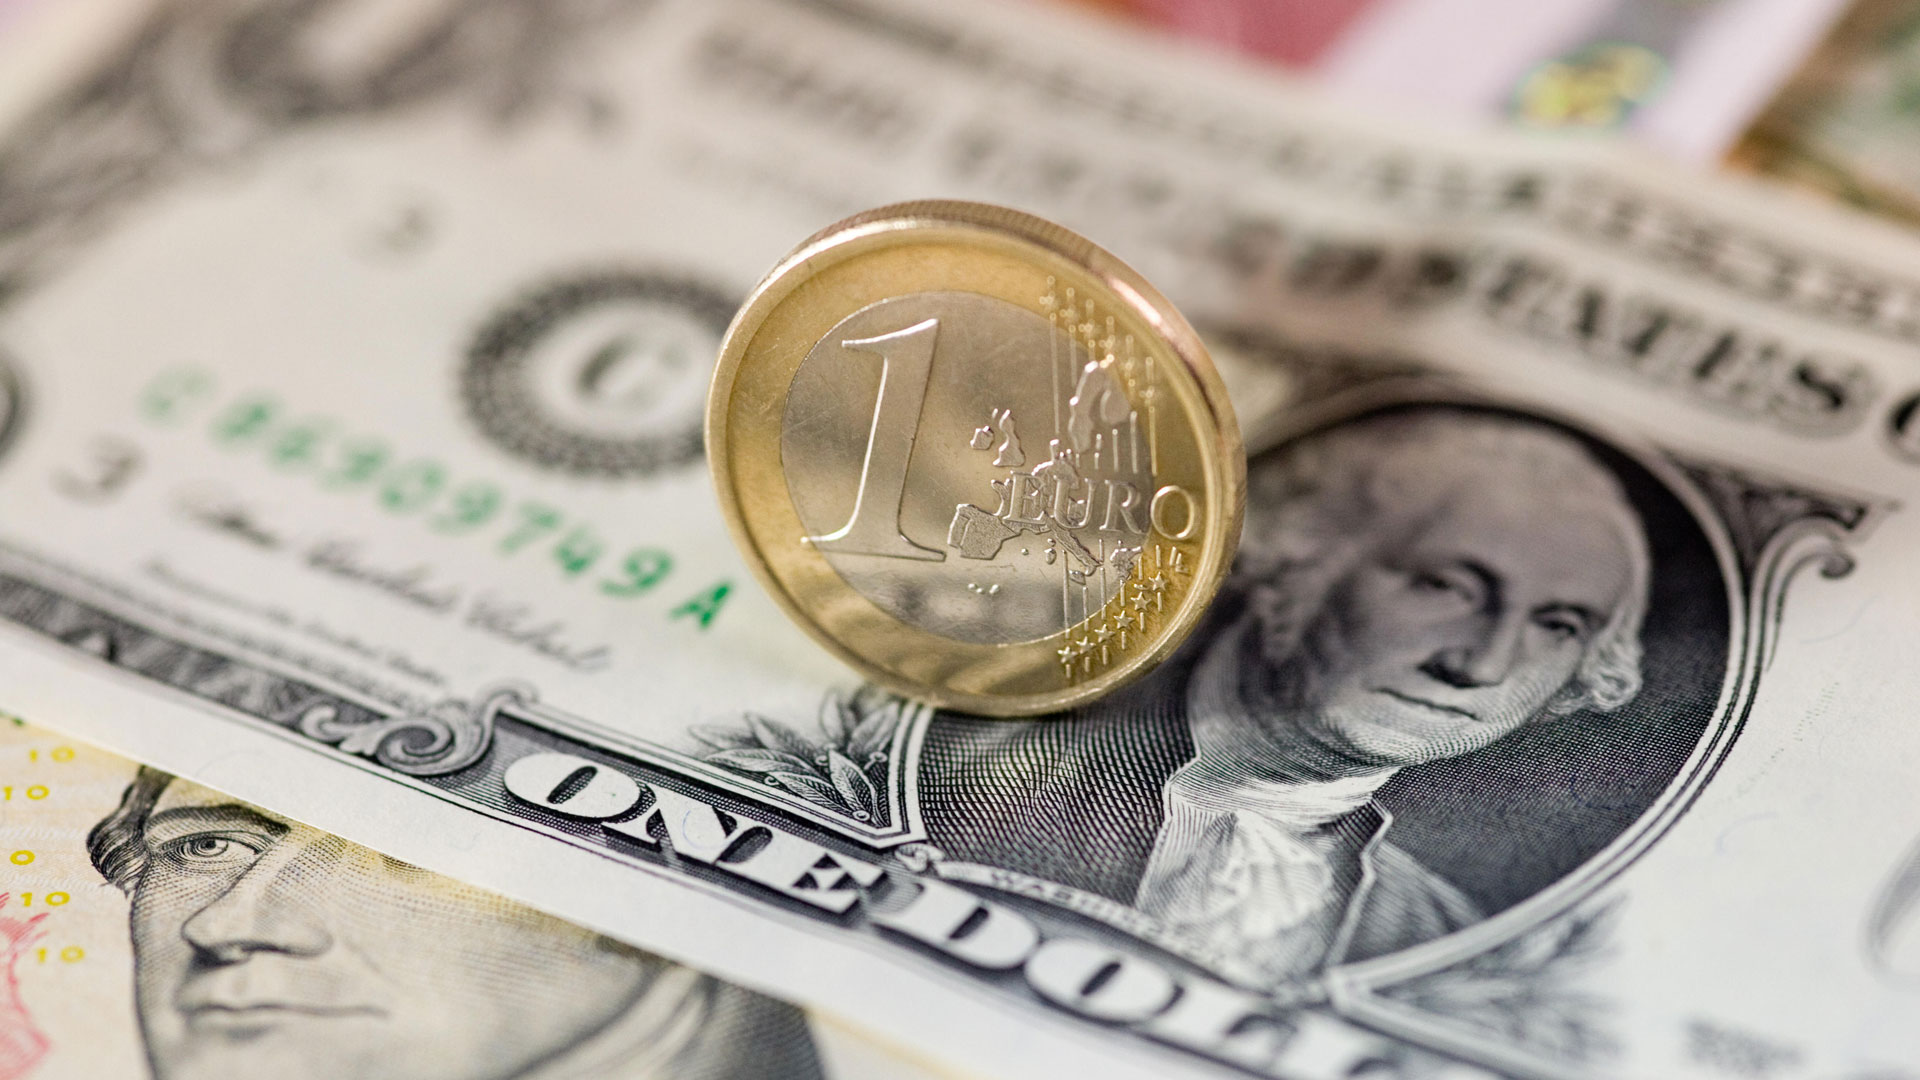 Euro Münze und Dollar Schein | picture alliance / agrarmotive